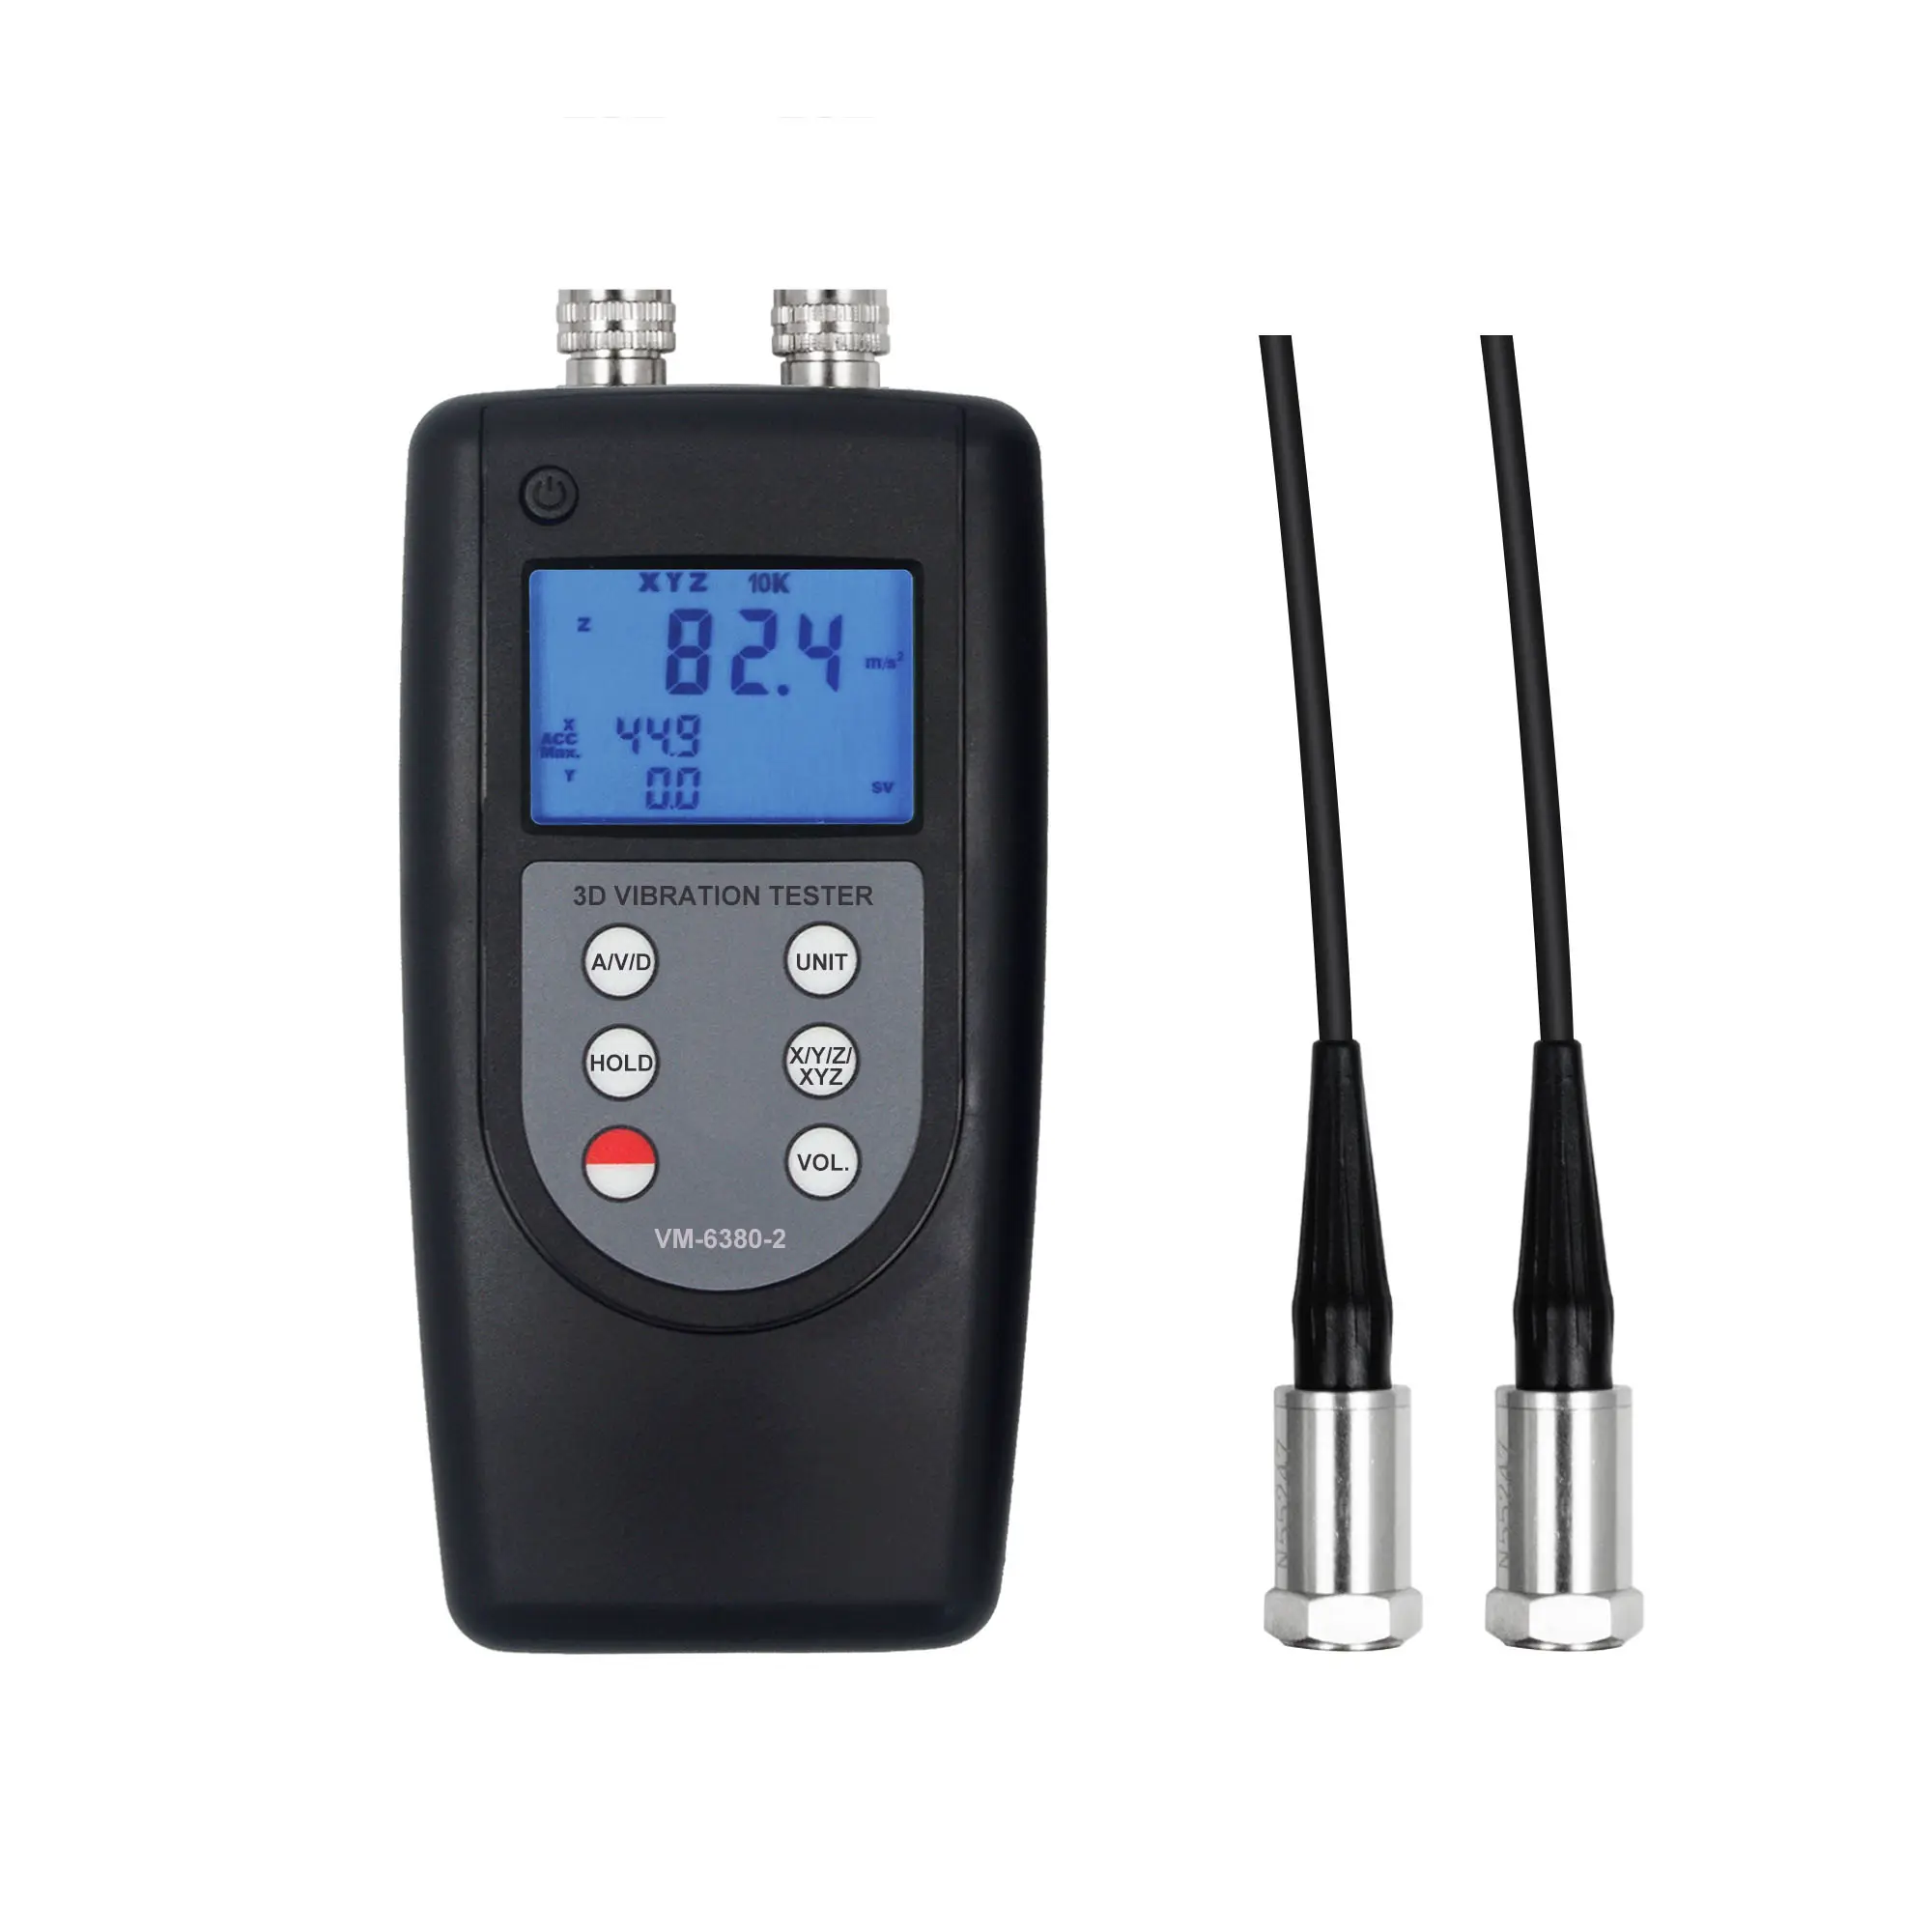 LANDTEK New Vibrometros Digital 2 Channels Vibration Meter Tester VM-6380-2